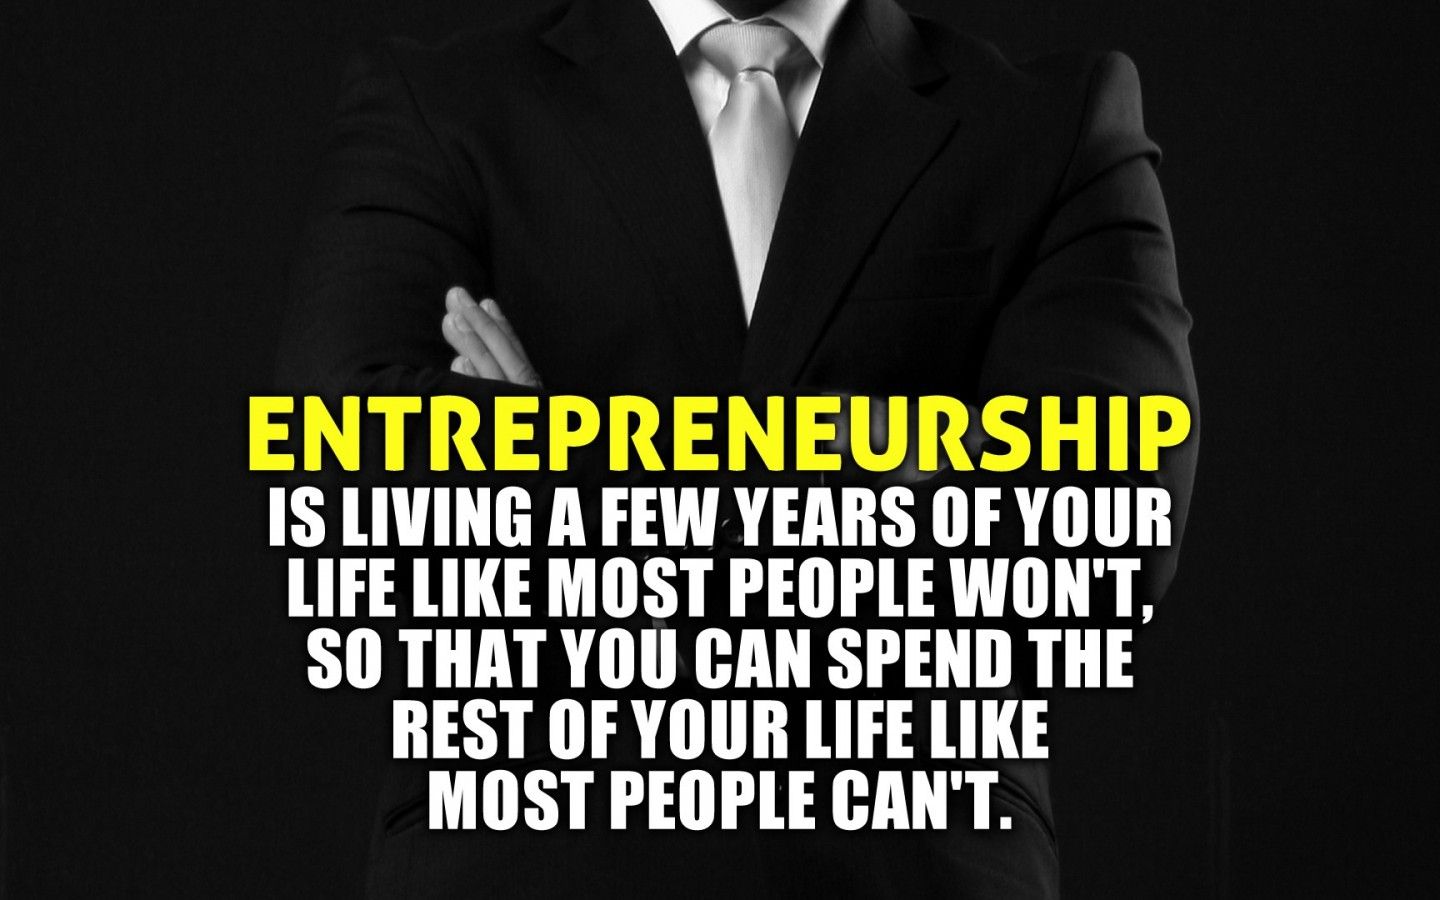 Famous quotes about 'Entrepreneur' Quotes 2019